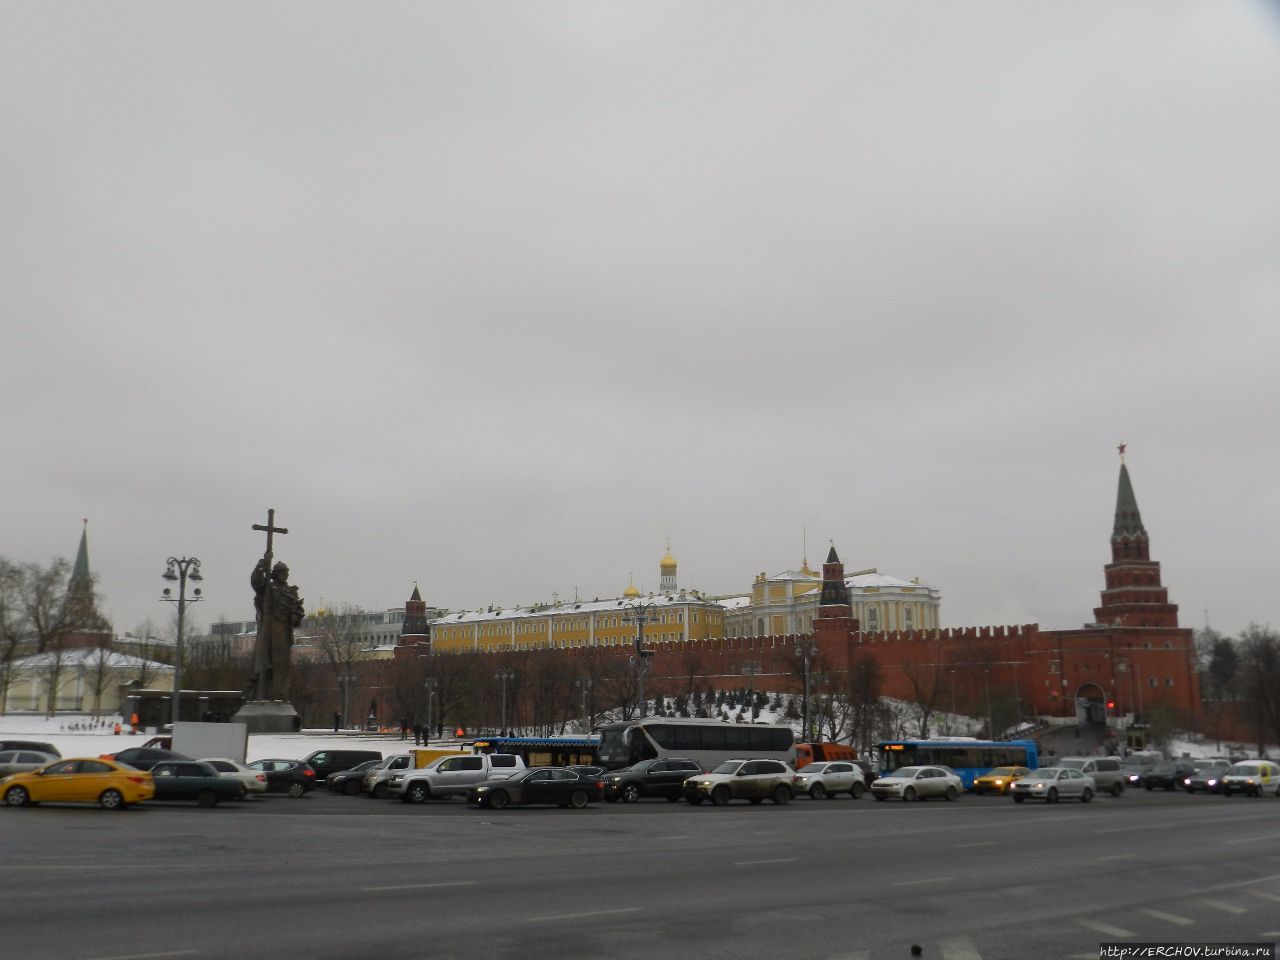 Памятник крестителю Руси Москва (город - регион), Россия